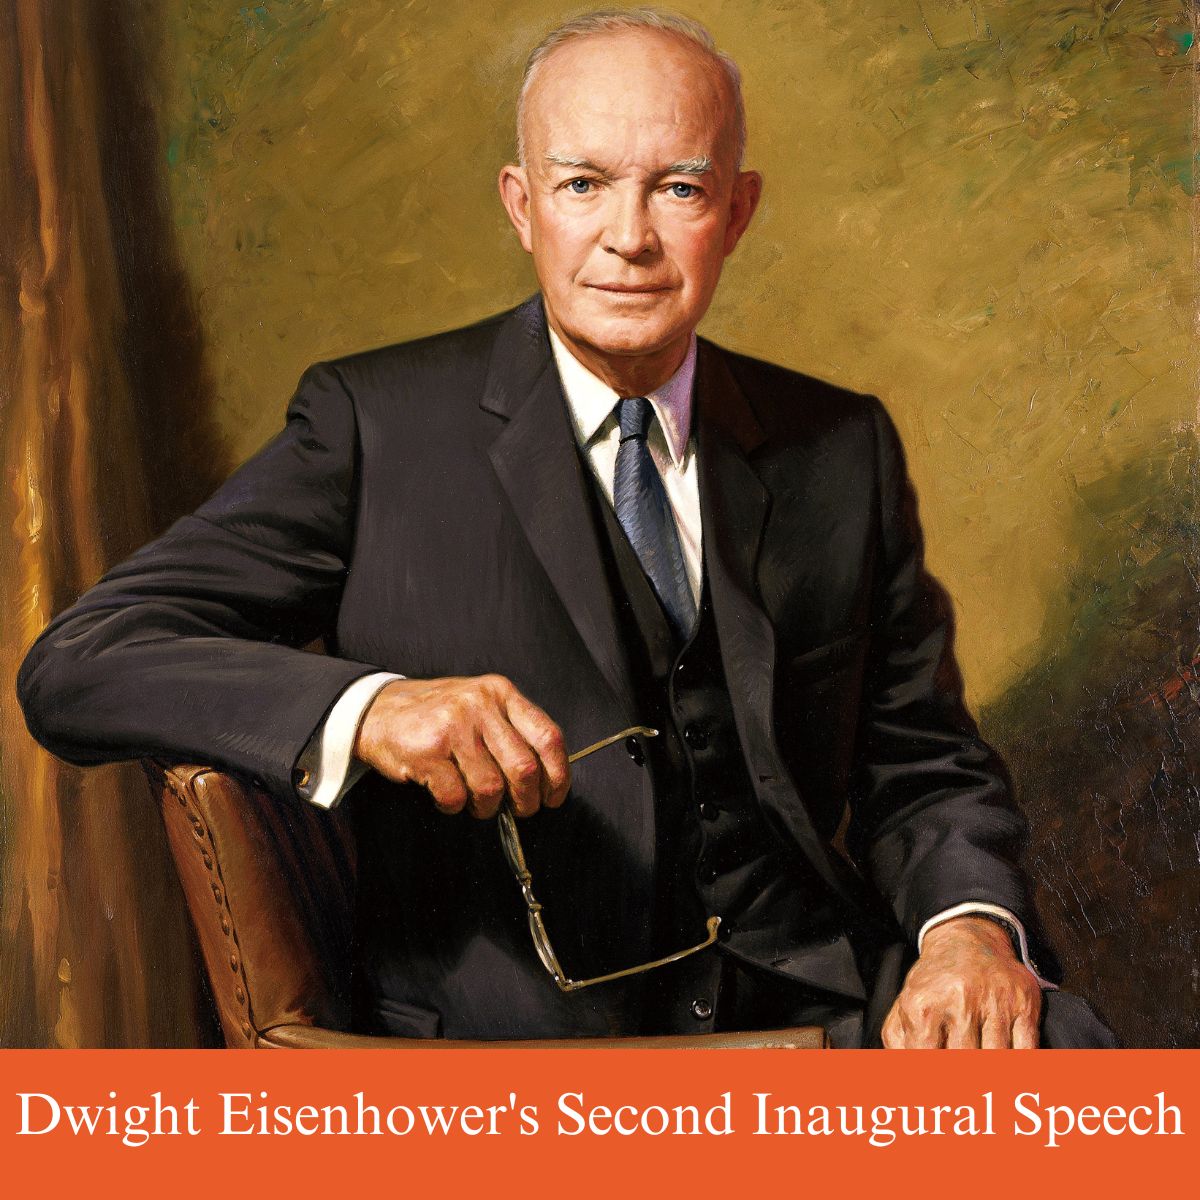 dwight eisenhower second inaugural speech